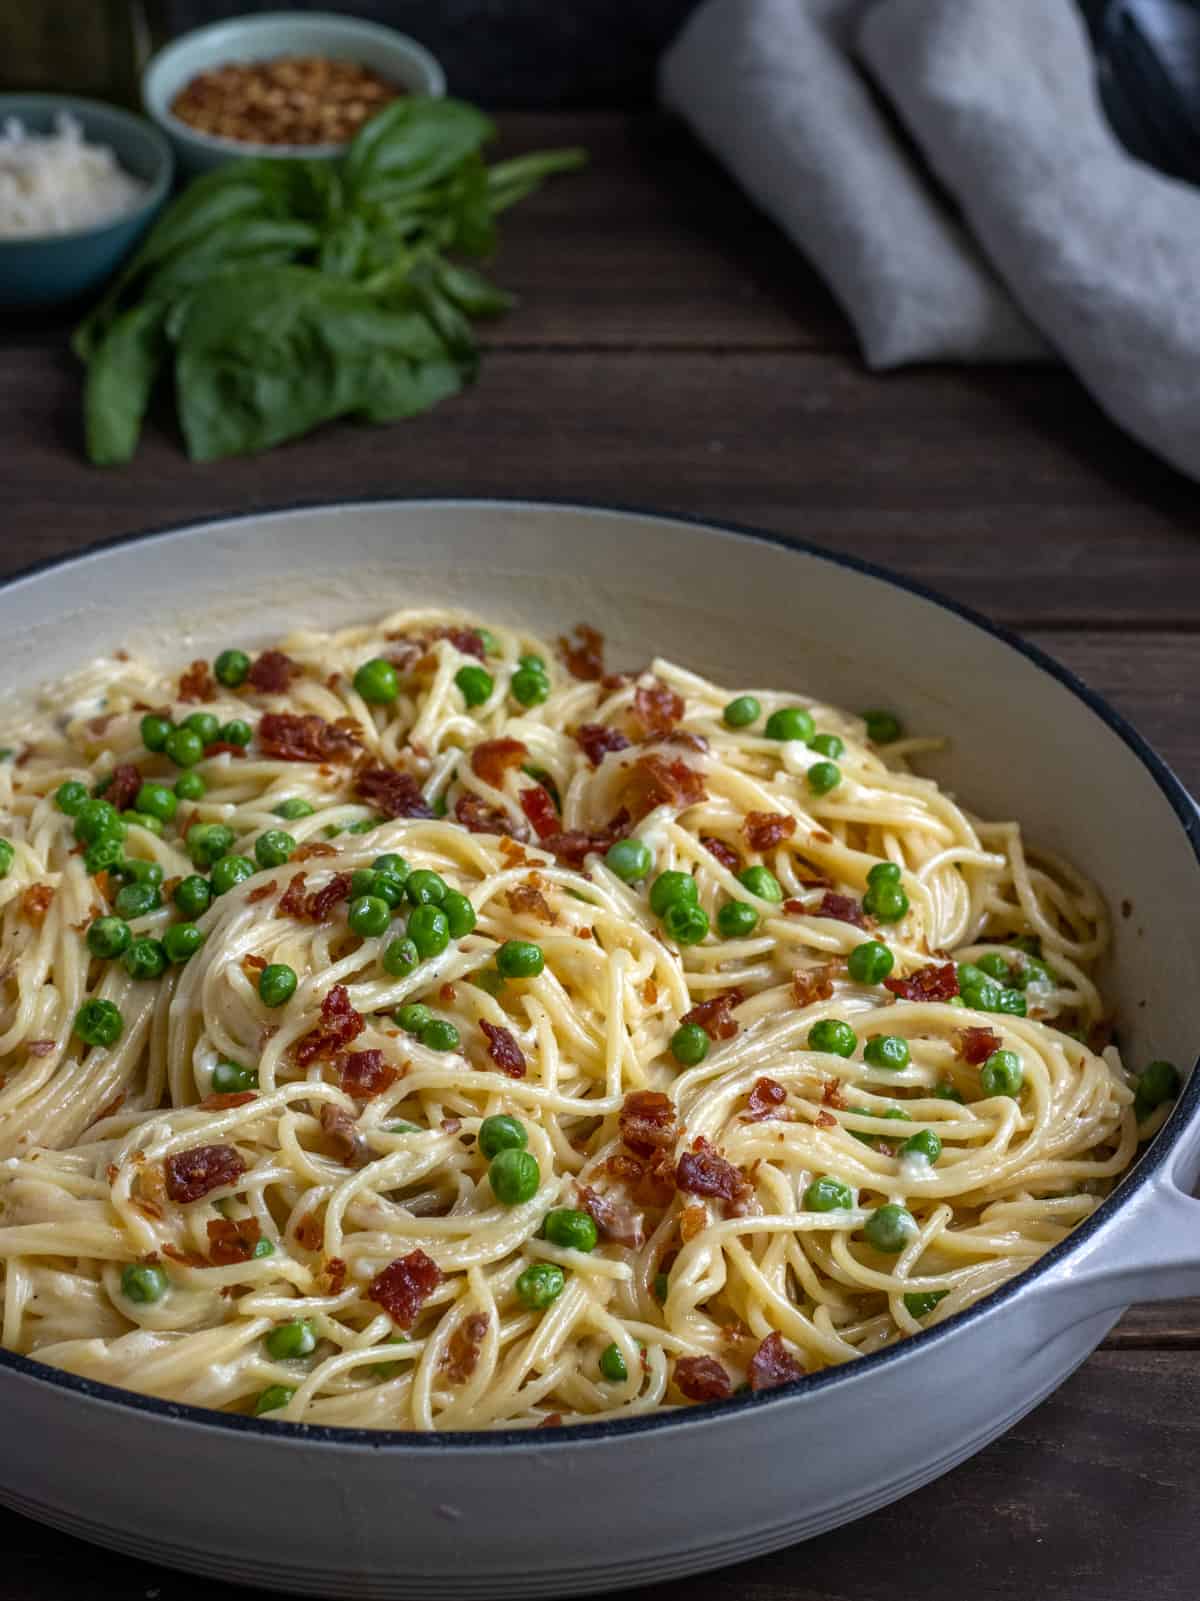 Spaghetti Alfredo with peas and prosciutto in a white casserole dish.